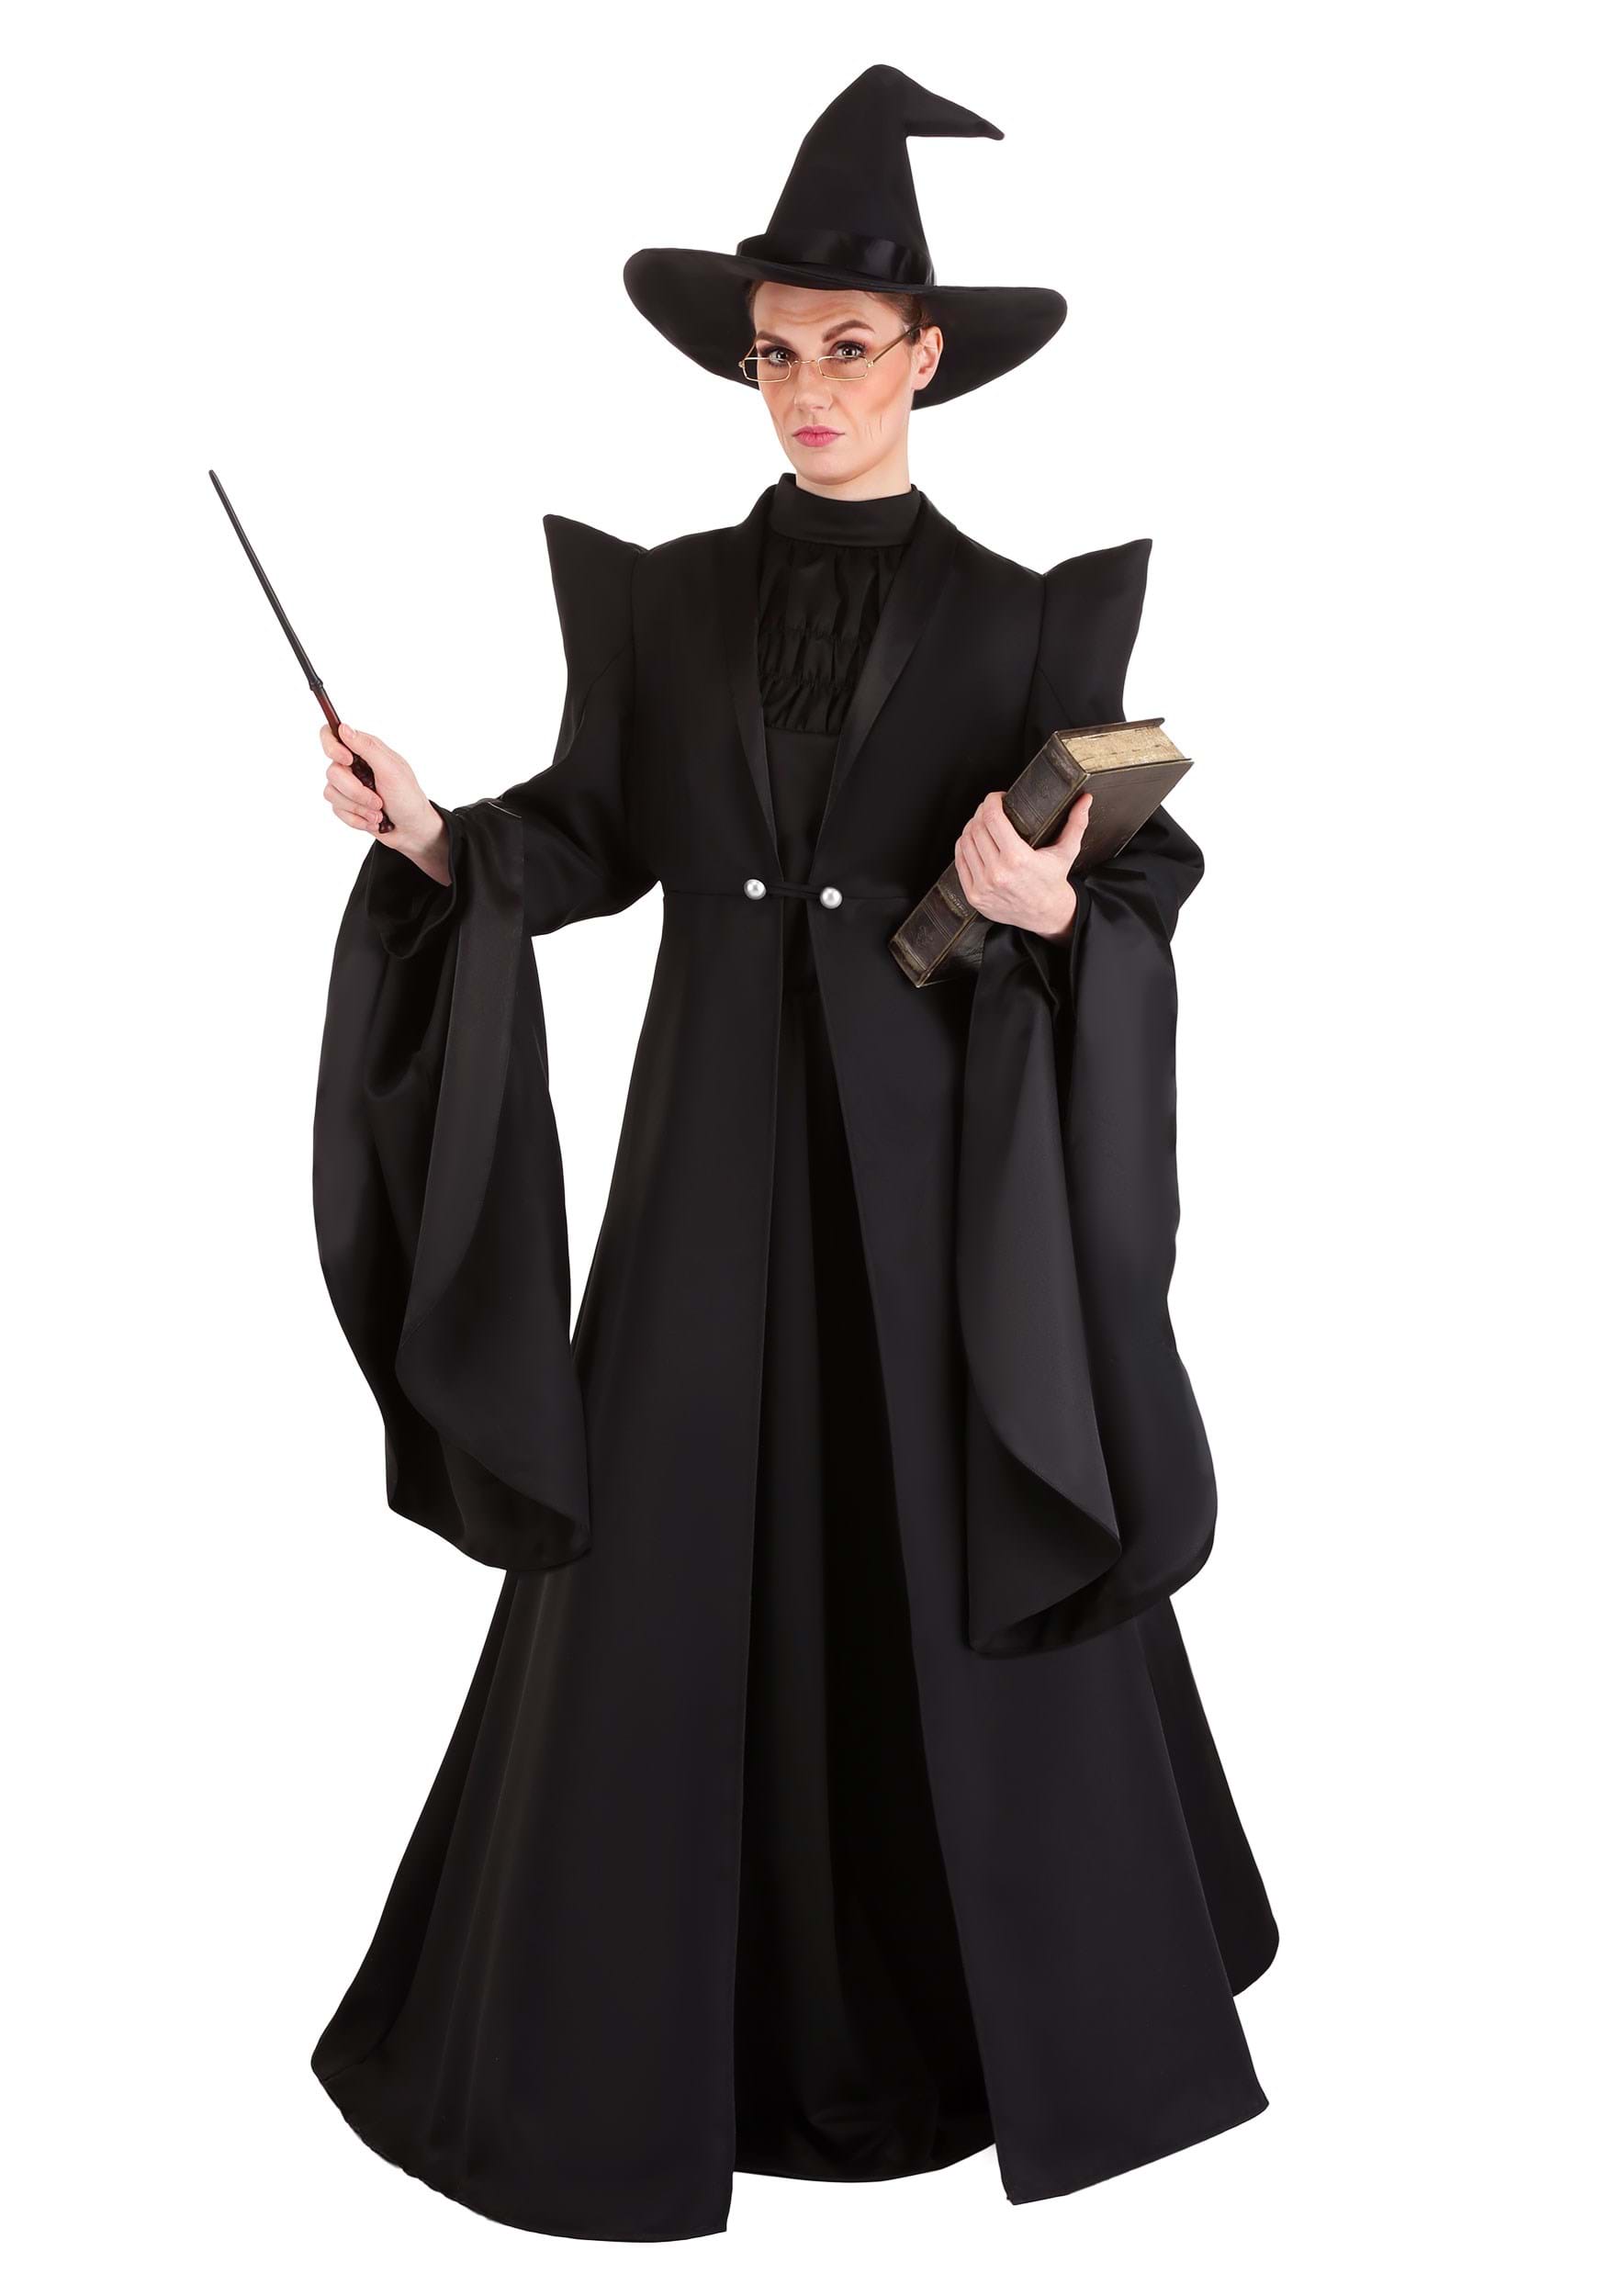 professor mcgonagall costumes adults